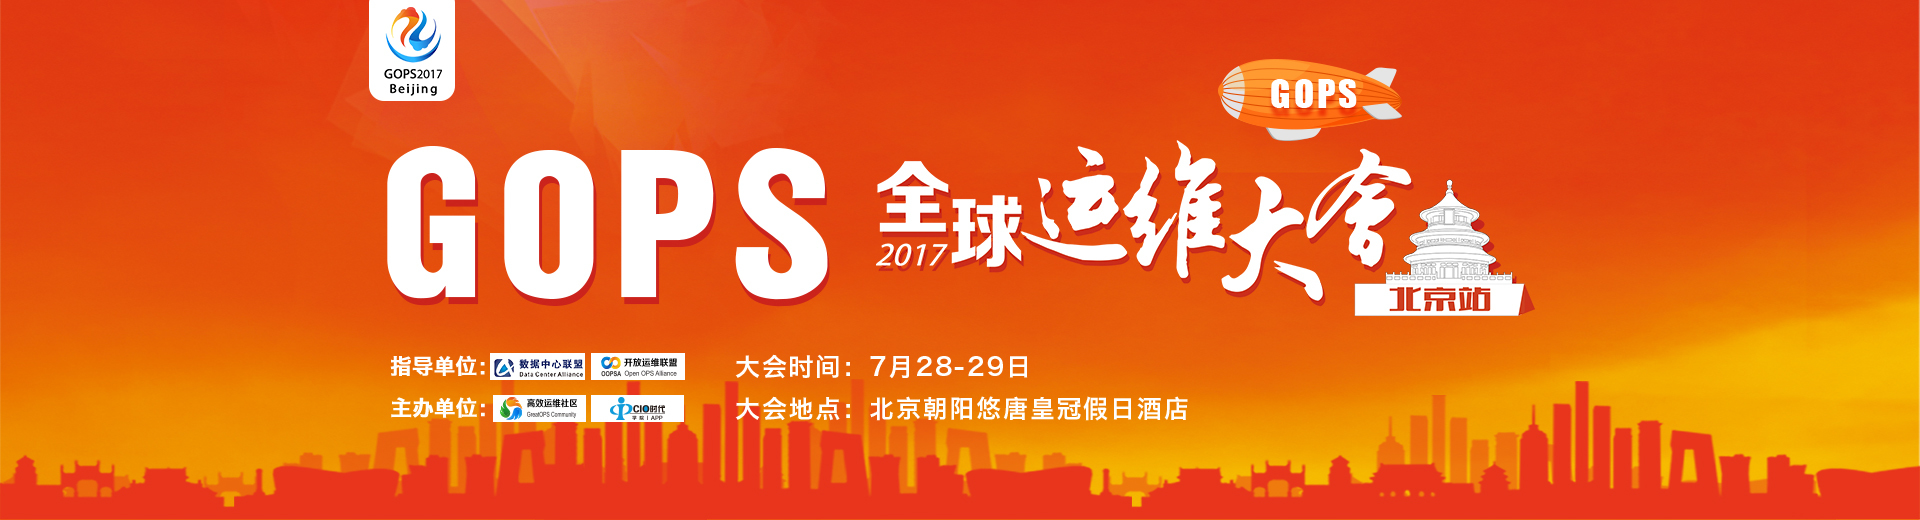 GOPS全球运维大会2017 • 北京站